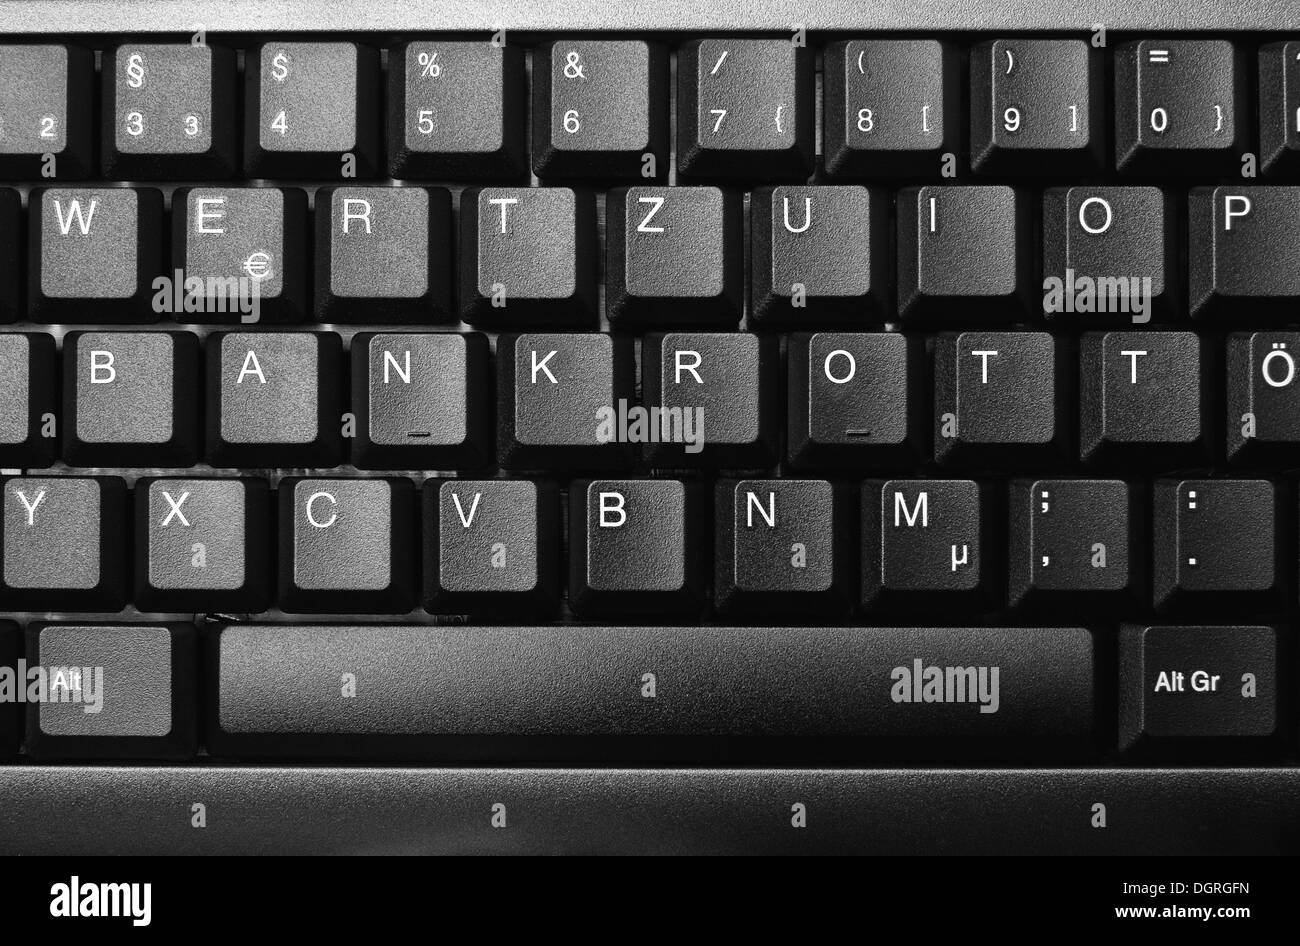 Con la palabra "teclado" Bankrott, quiebra en blanco Foto de stock